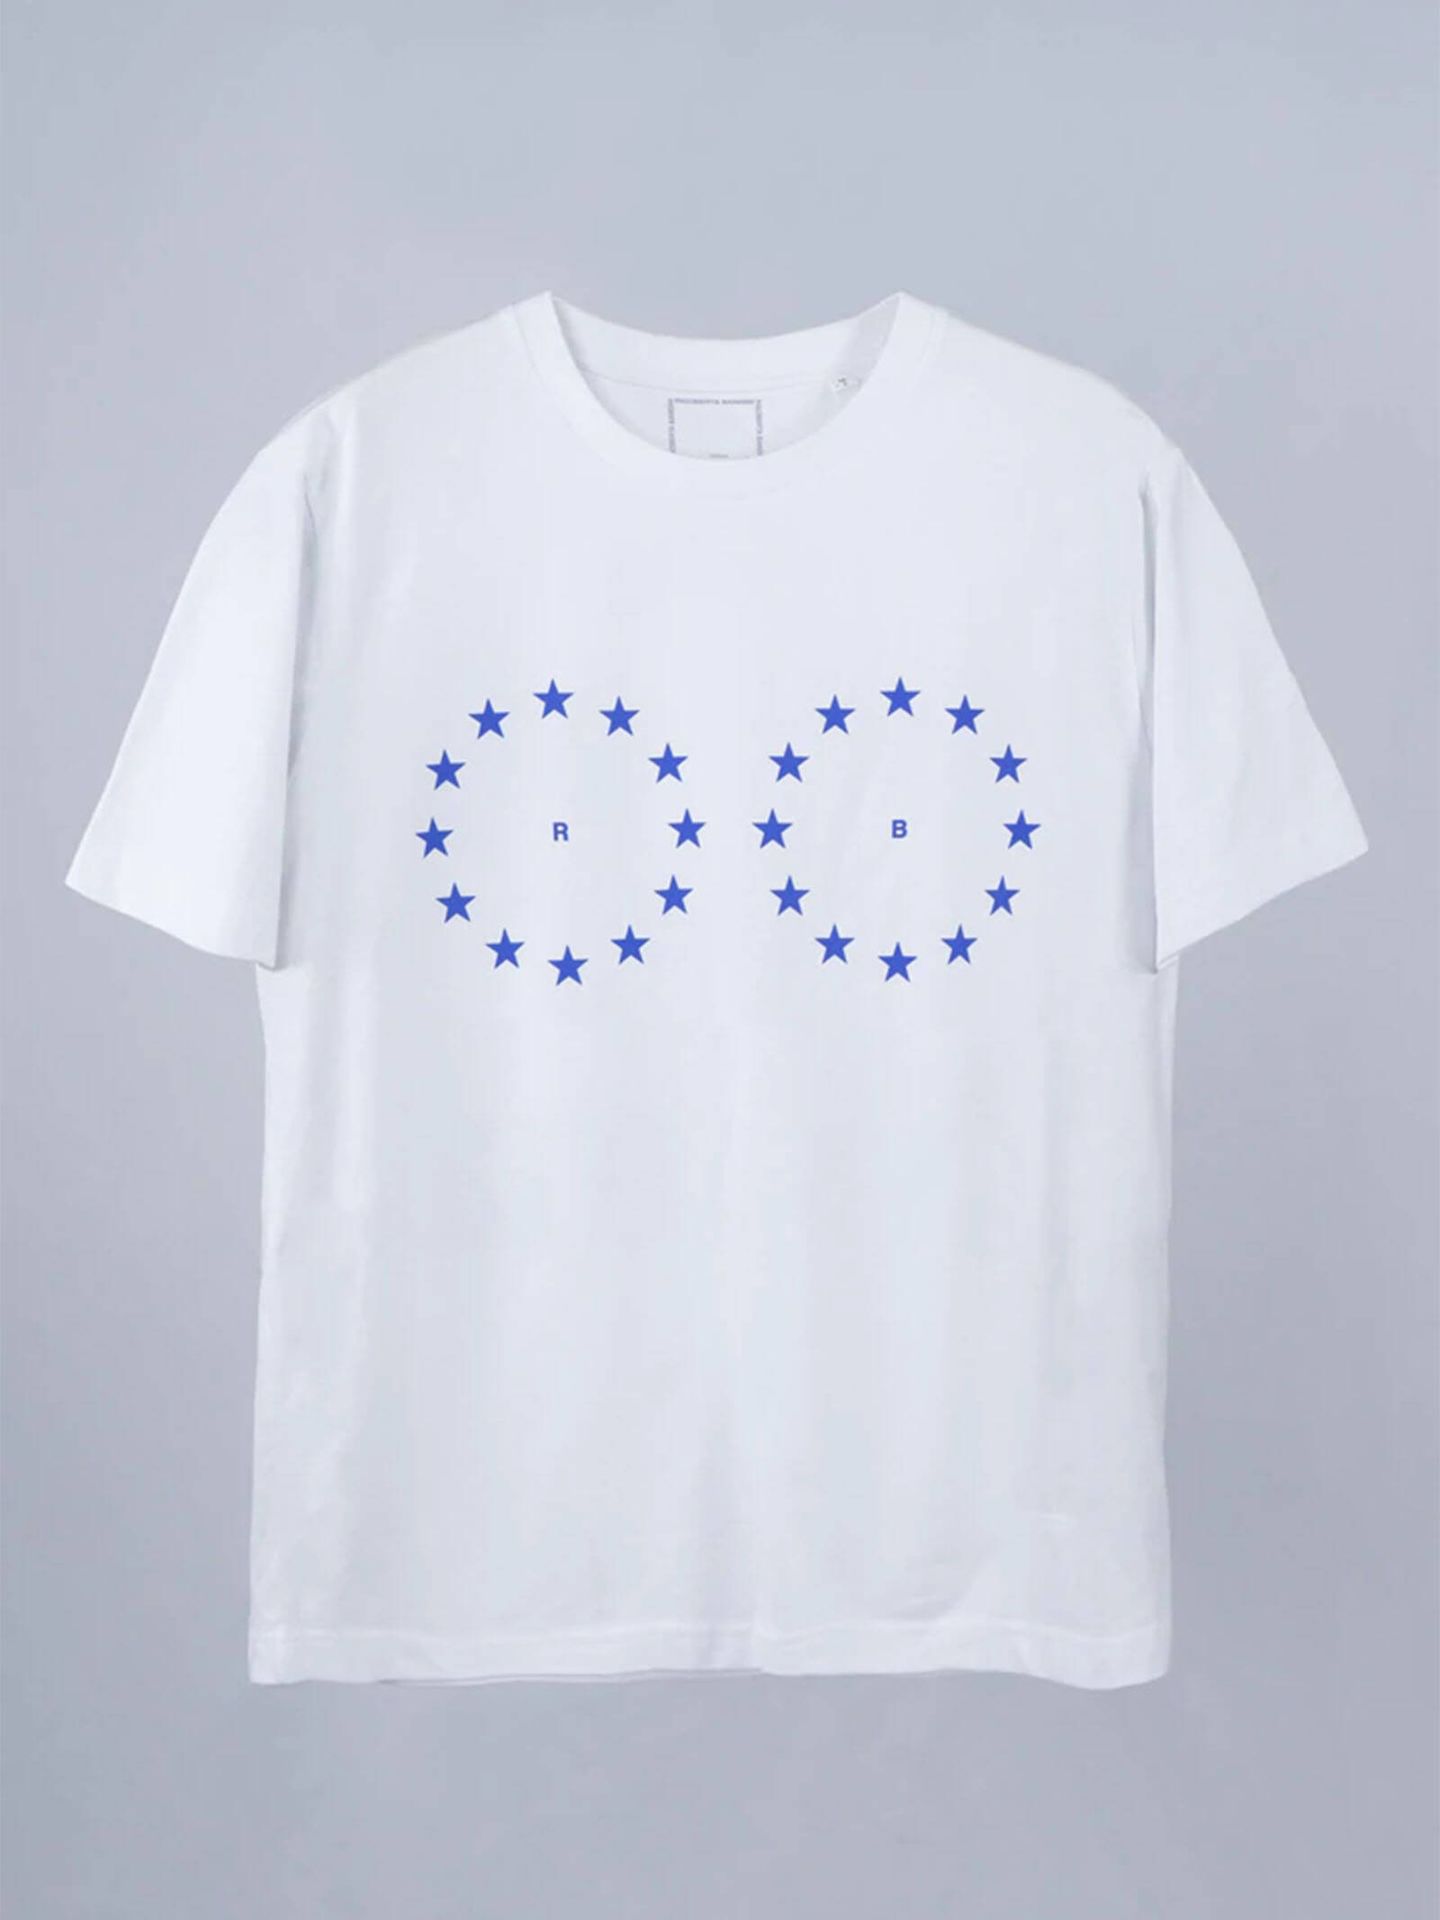 Una de las camisetas que ha lanzado Rigoberta Bandini. (Cortesía)